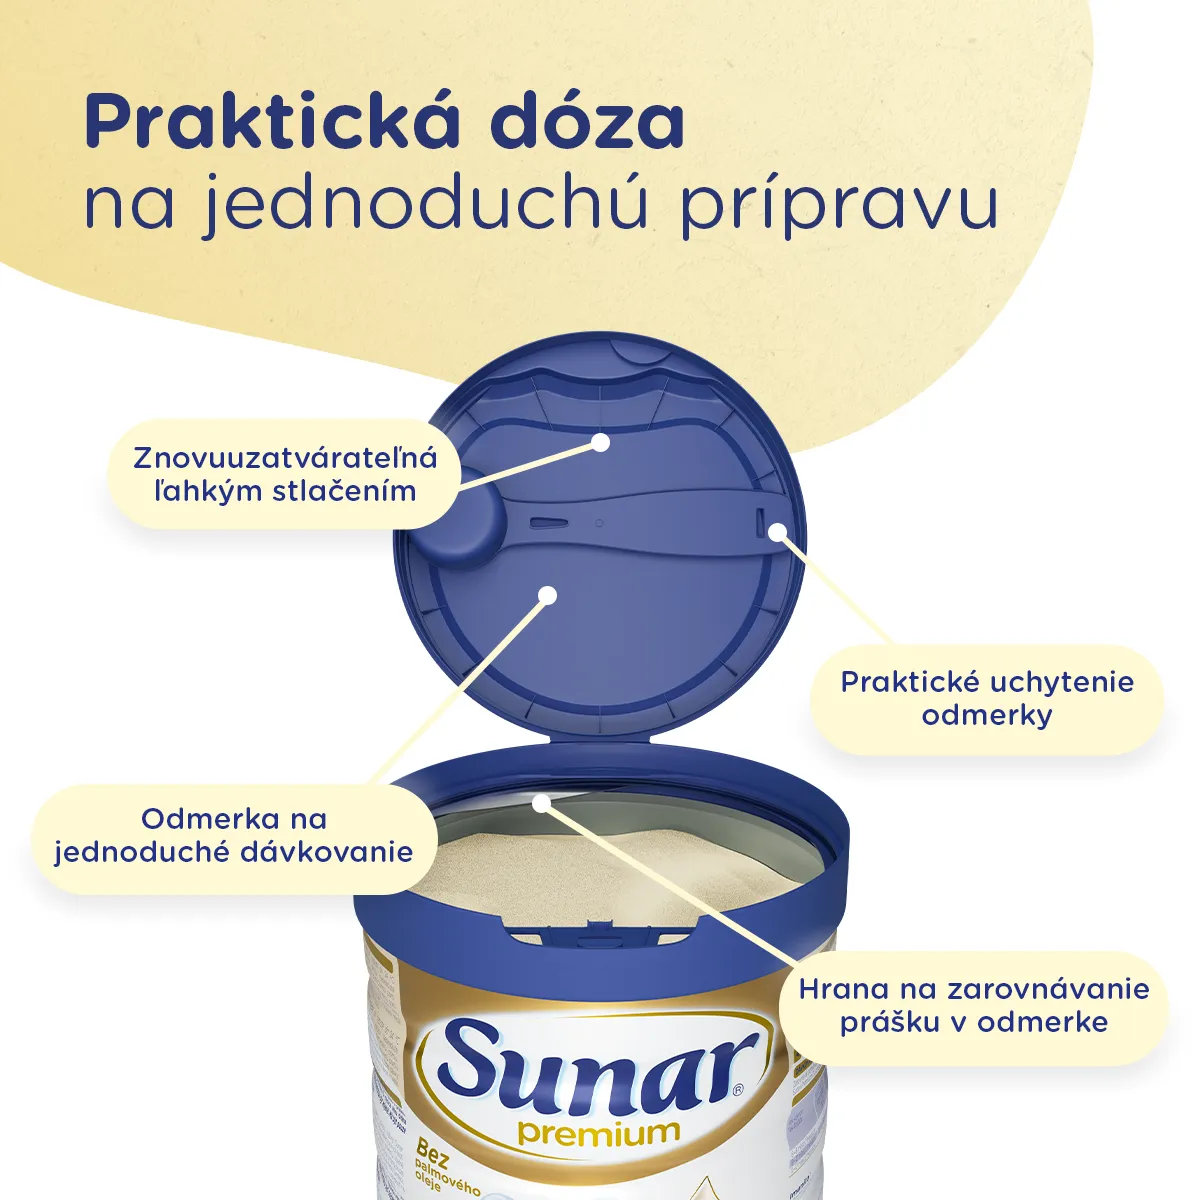 Sunar Premium 3 1×700 g, dojčenské mlieko, od 12. mesiaca